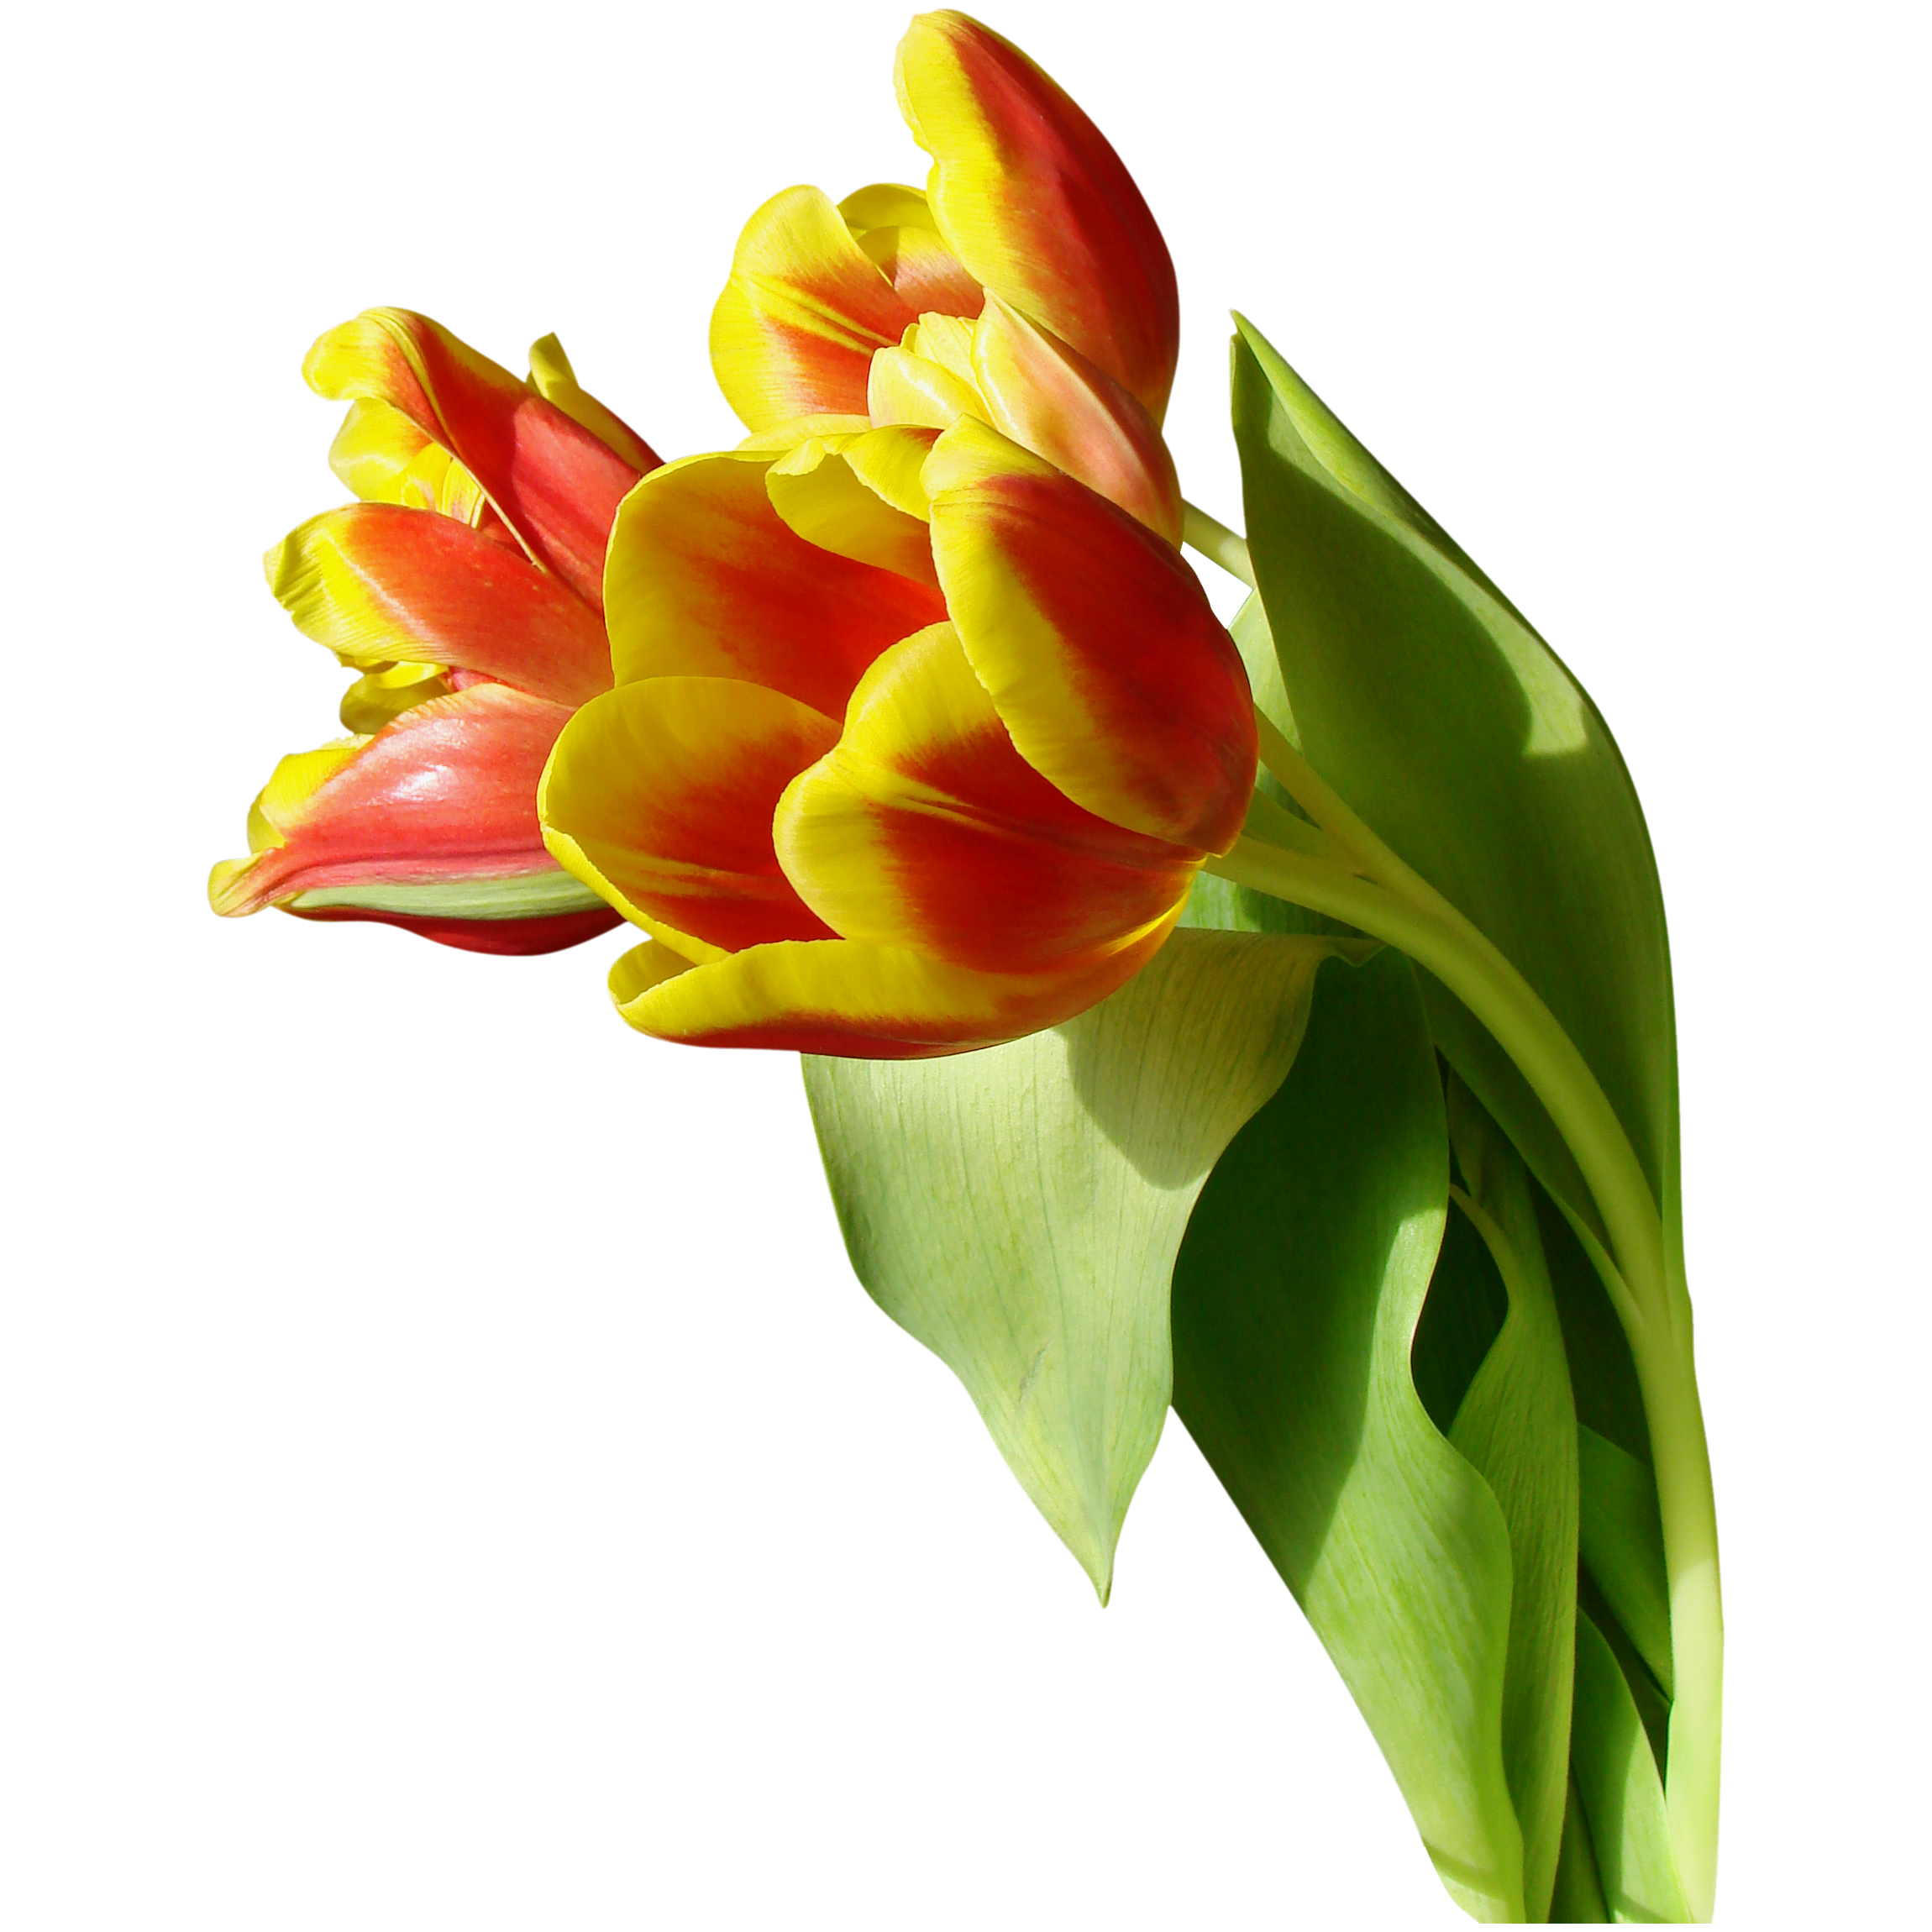 Tulip Transparent Picture